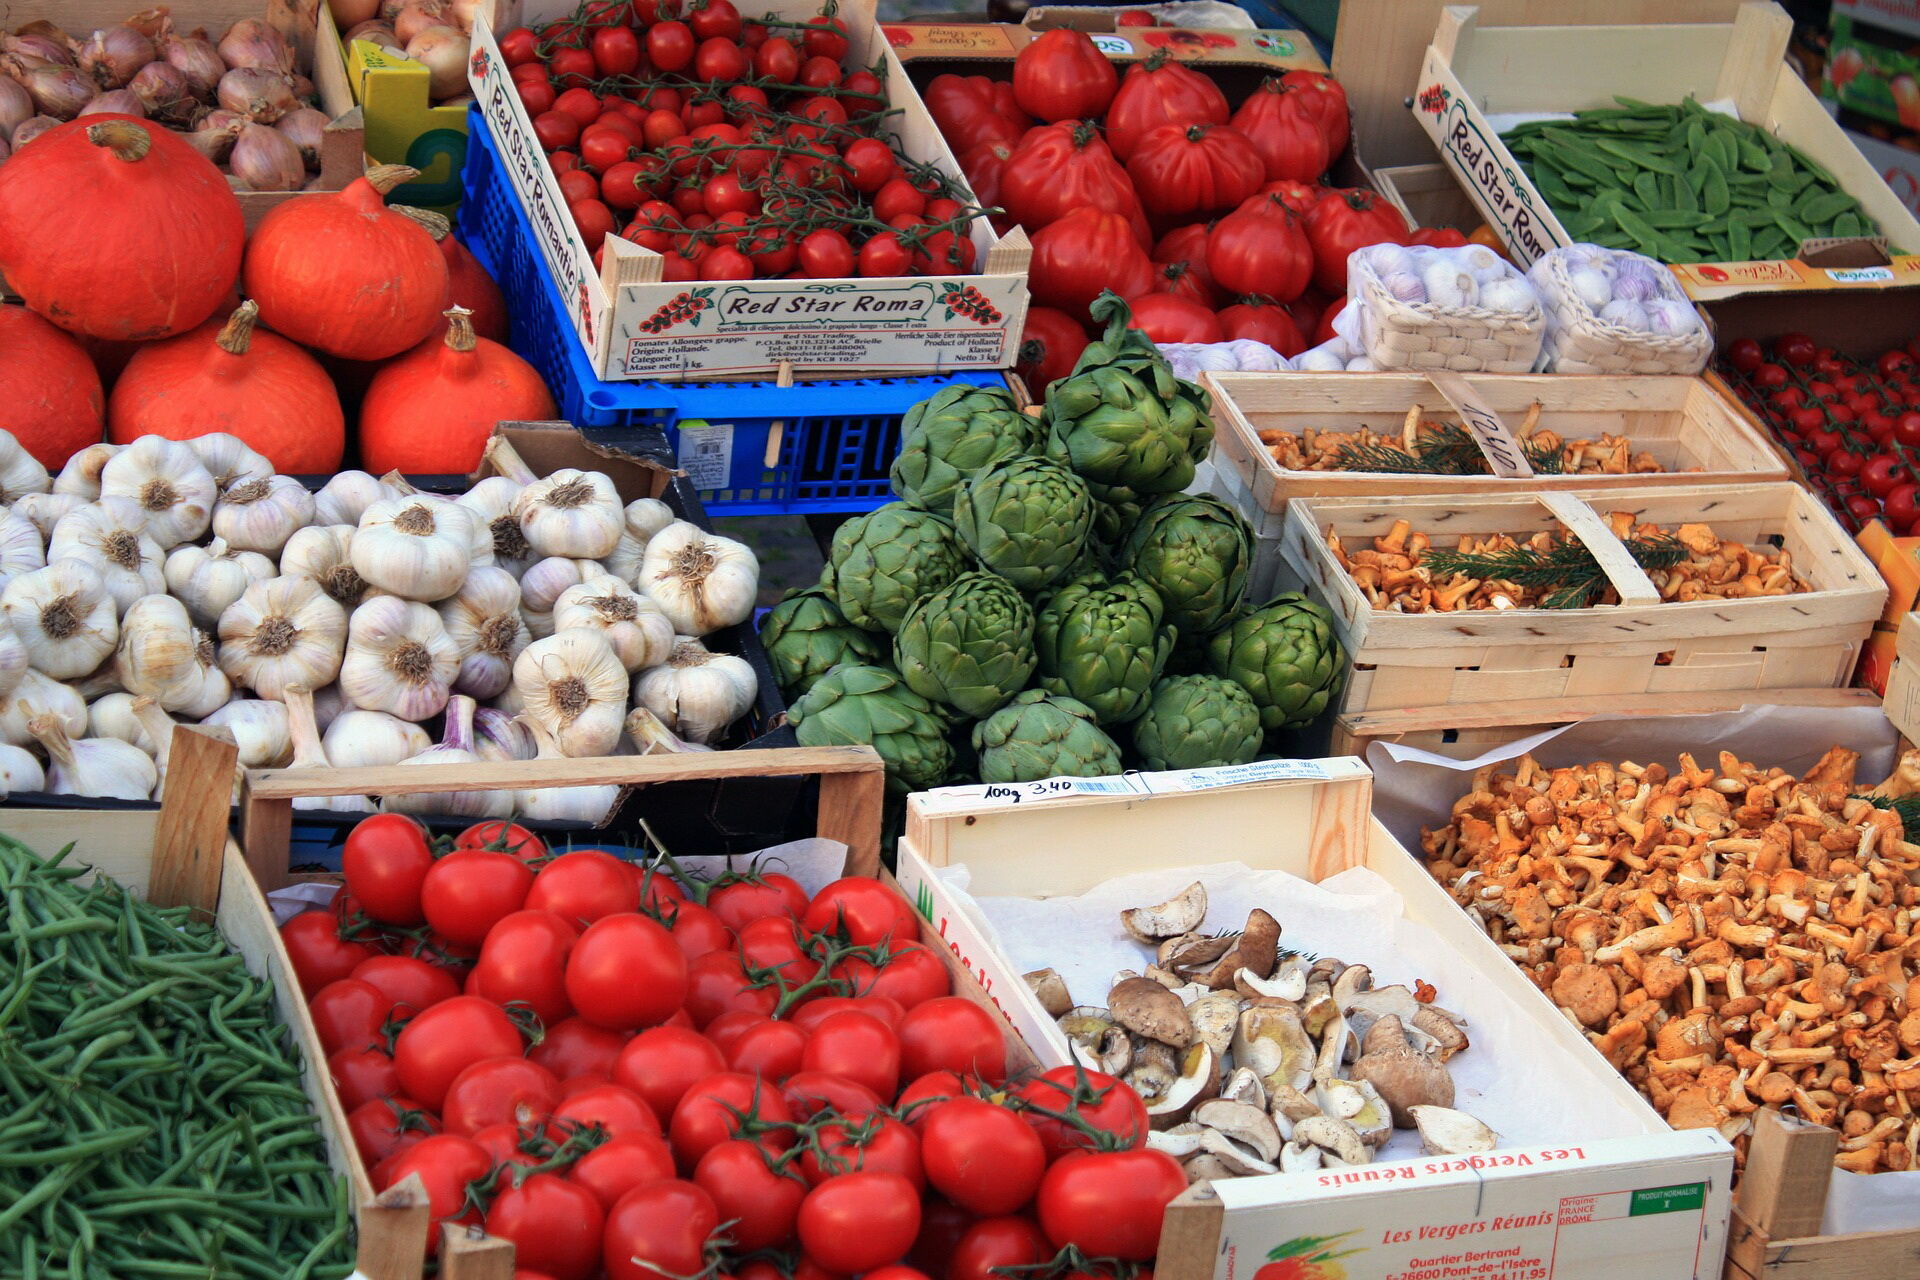 Marktstadt Gemüse, Foto: Geralt, Lizenz: pixabay